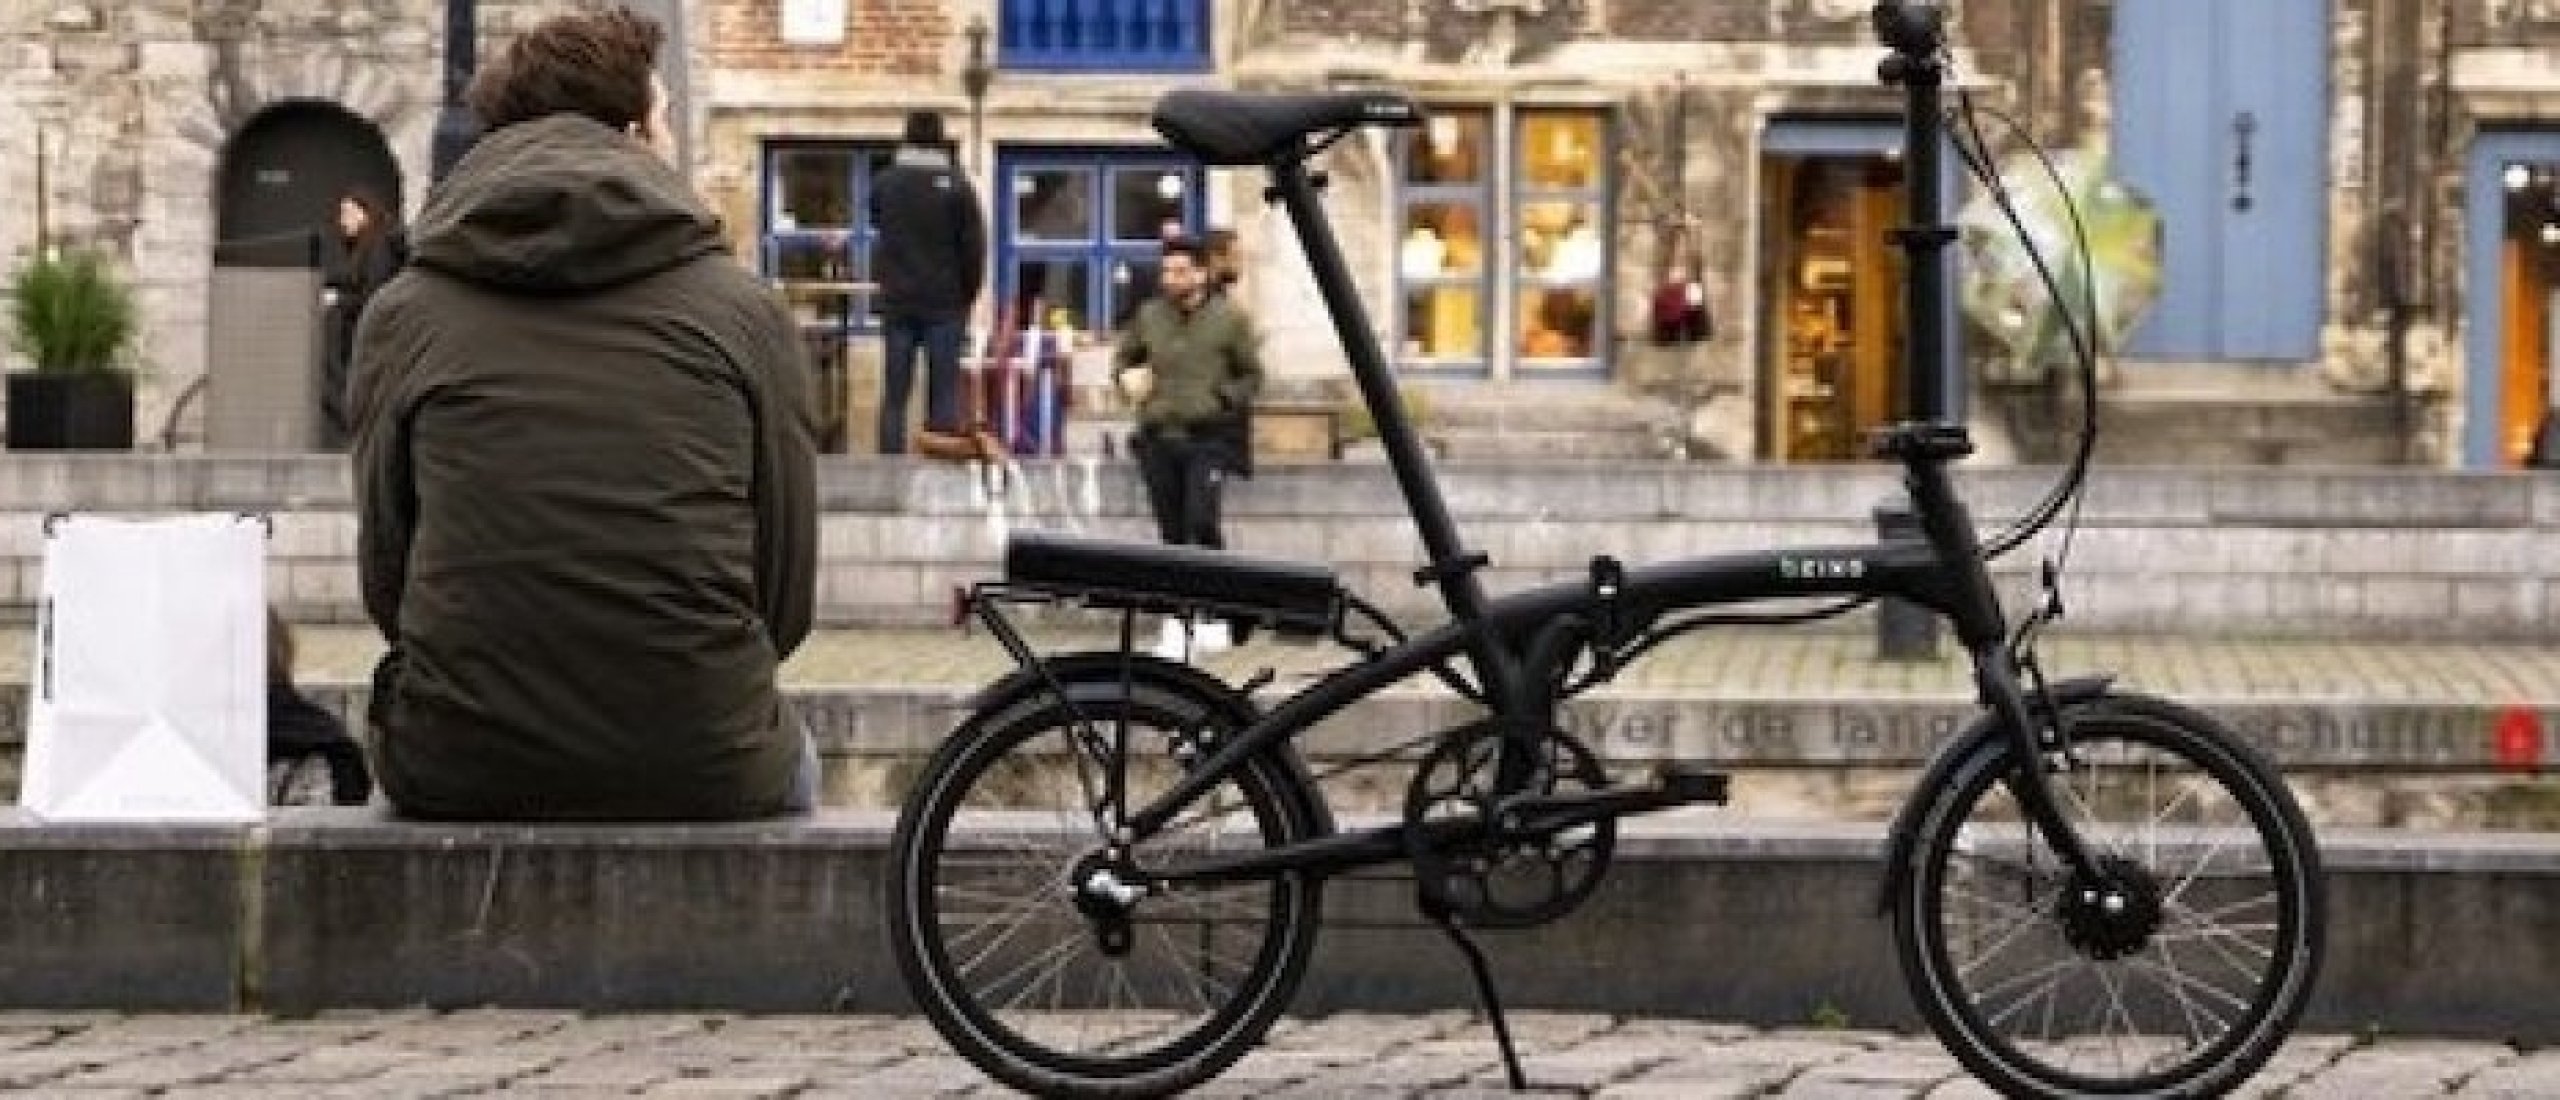 straal accessoires Avonturier Beste elektrische vouwfiets kopen kies voor de Beixo zonder ketting!